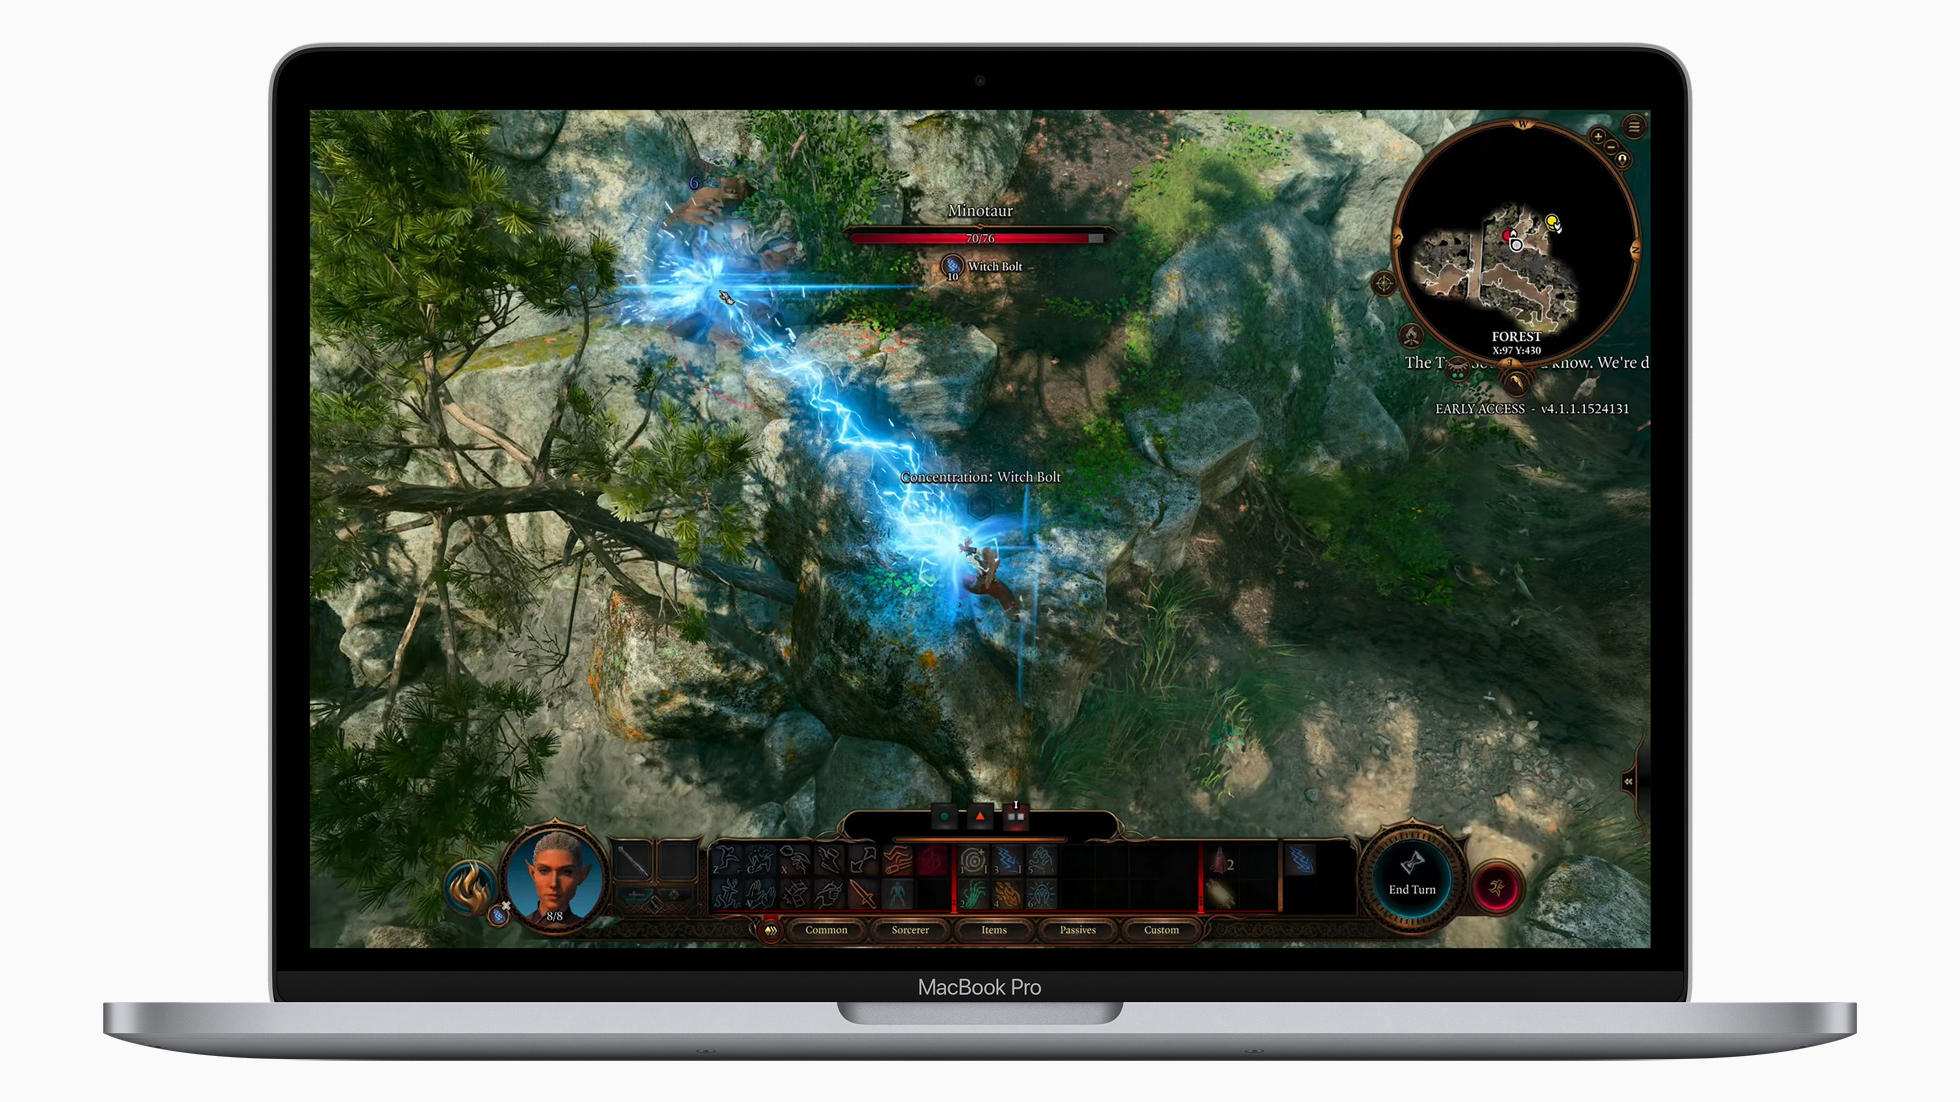 Baldur's Gate 3 running on macOS